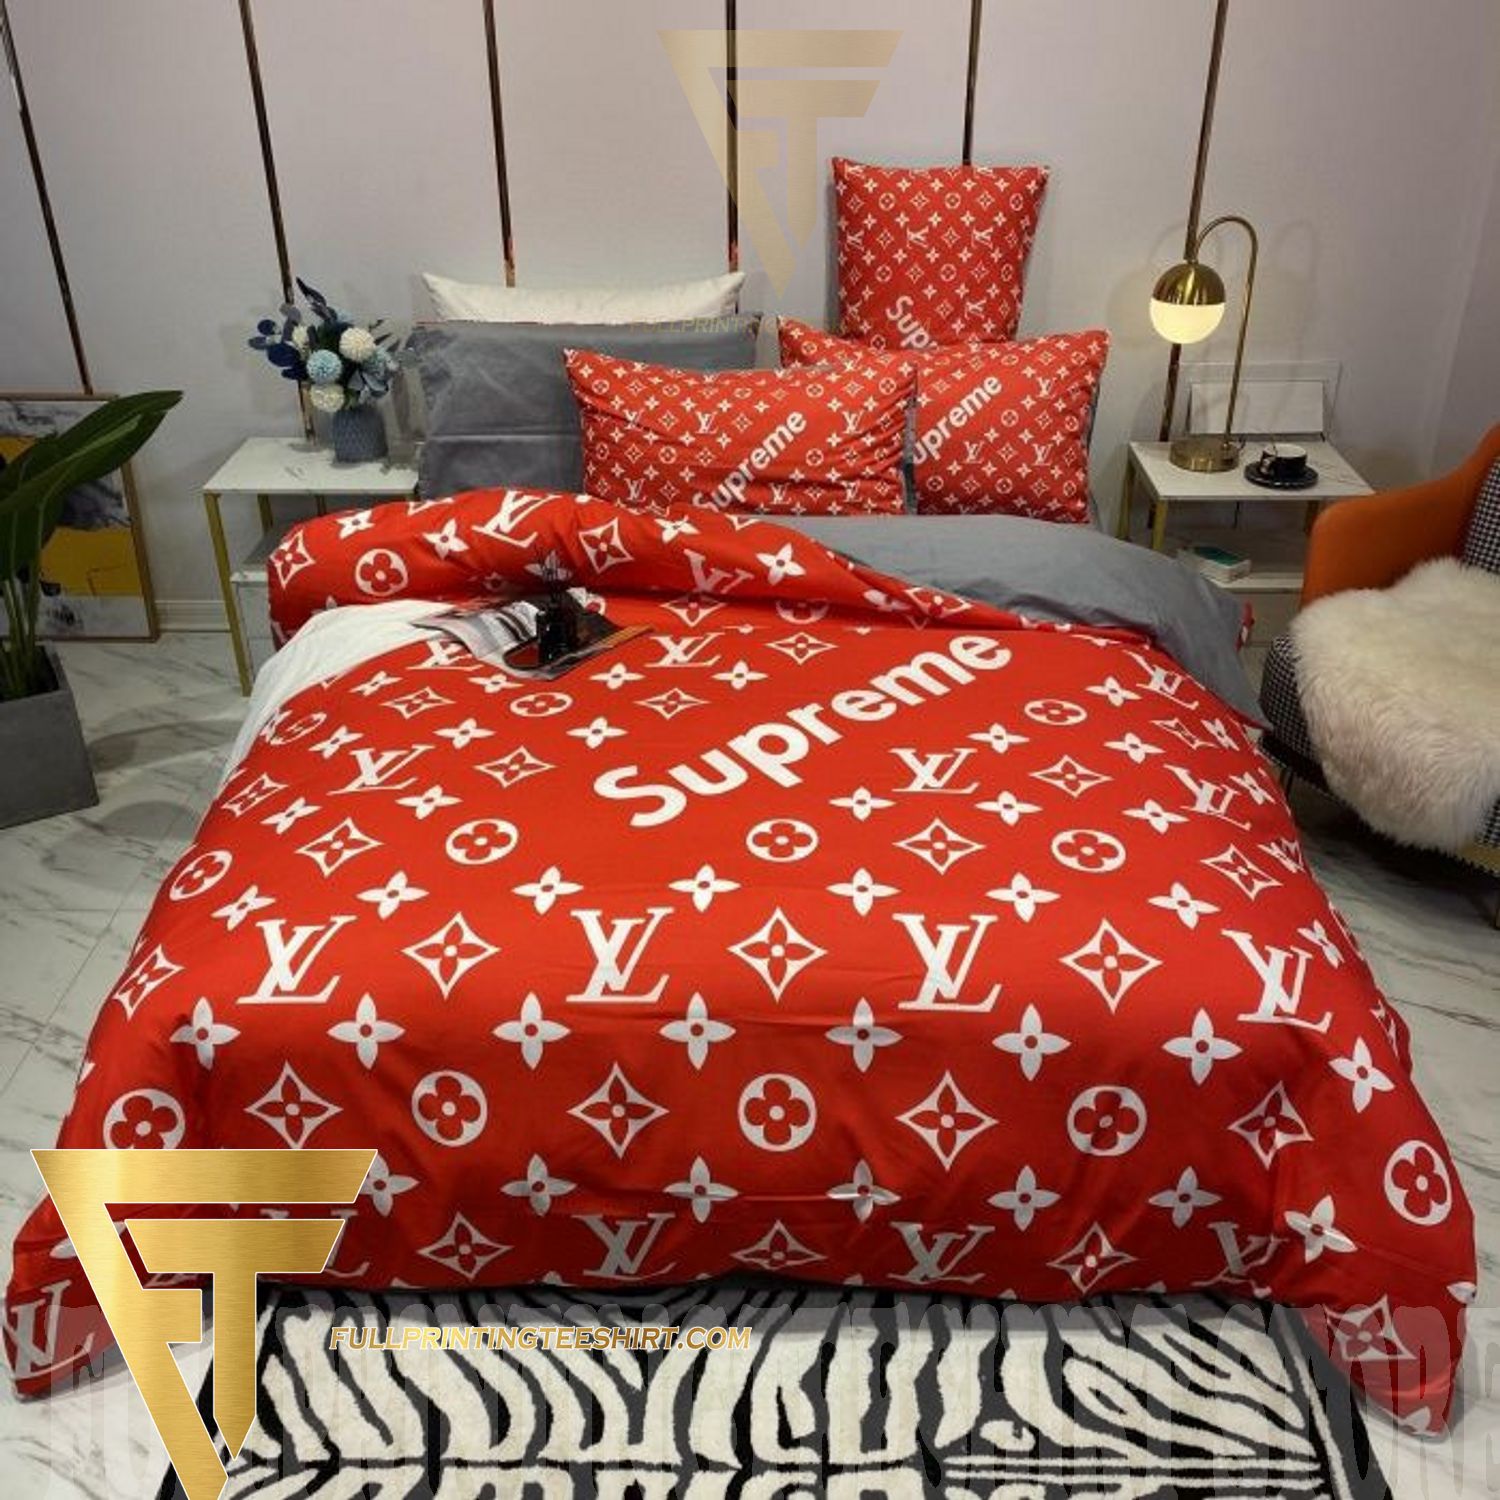 LV Complete Bedding Set - 1 Duvet Comforter, 1 Bed Spread & 4